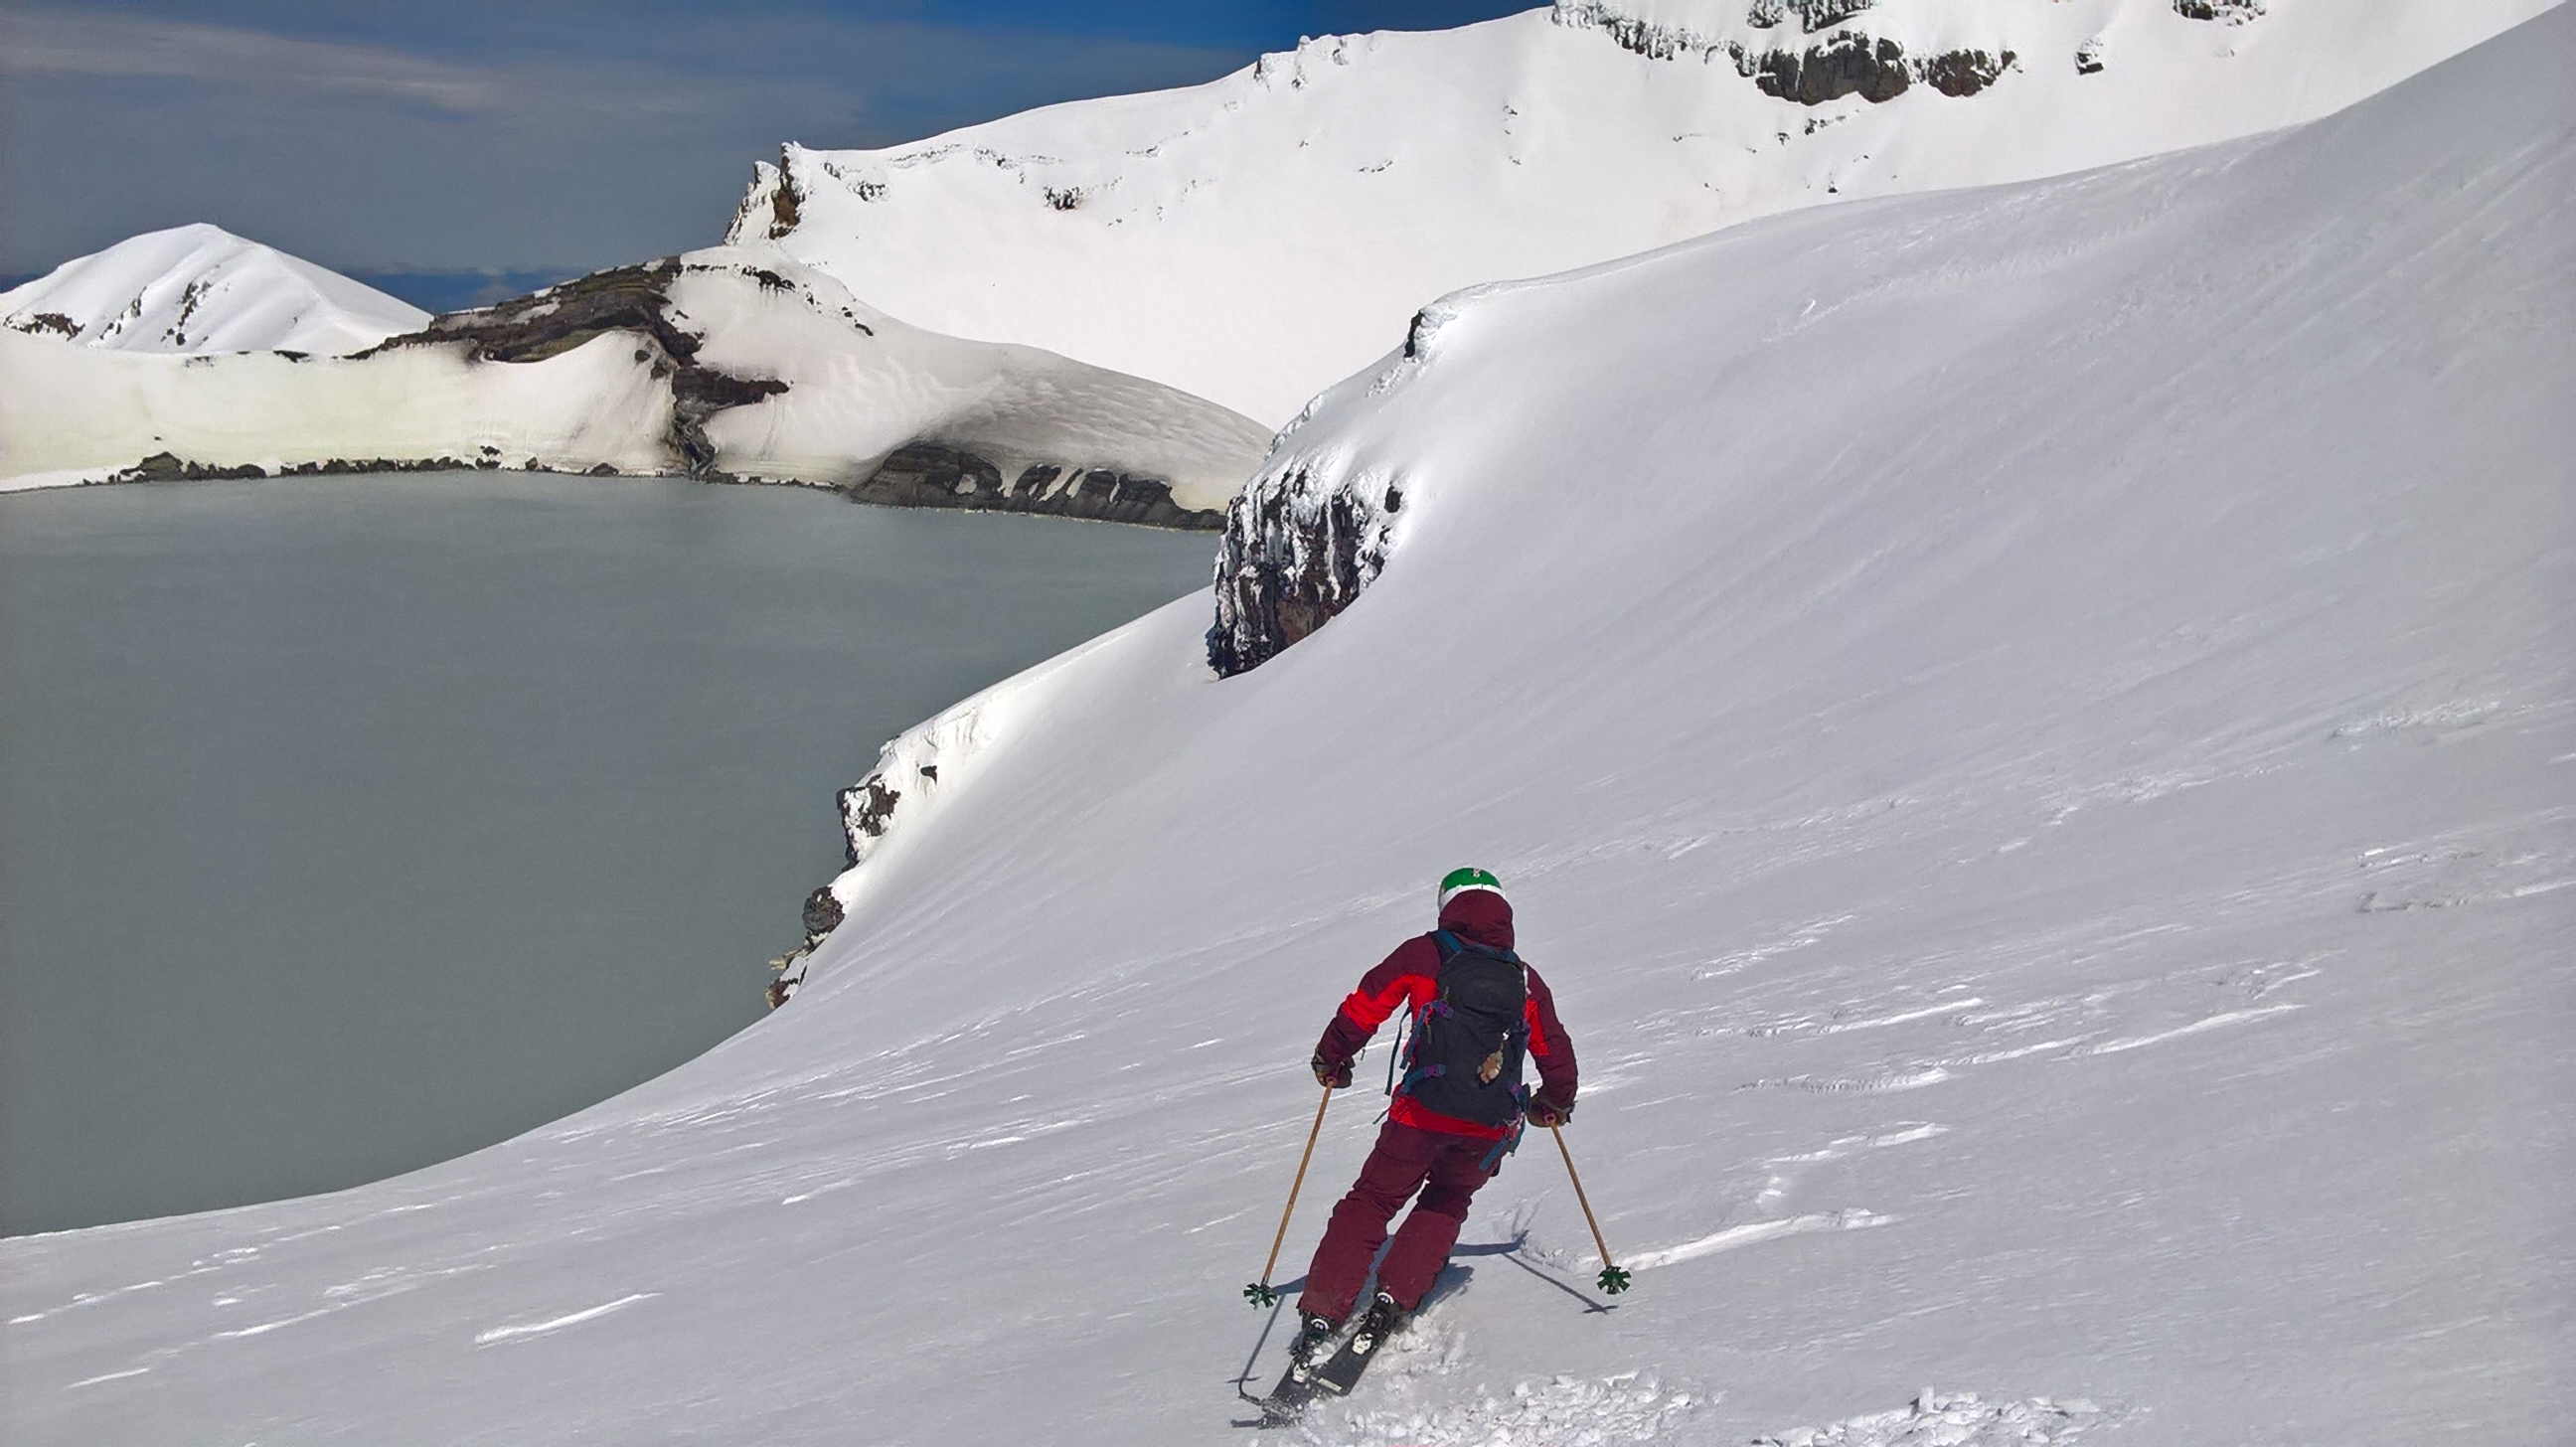 Crater ski